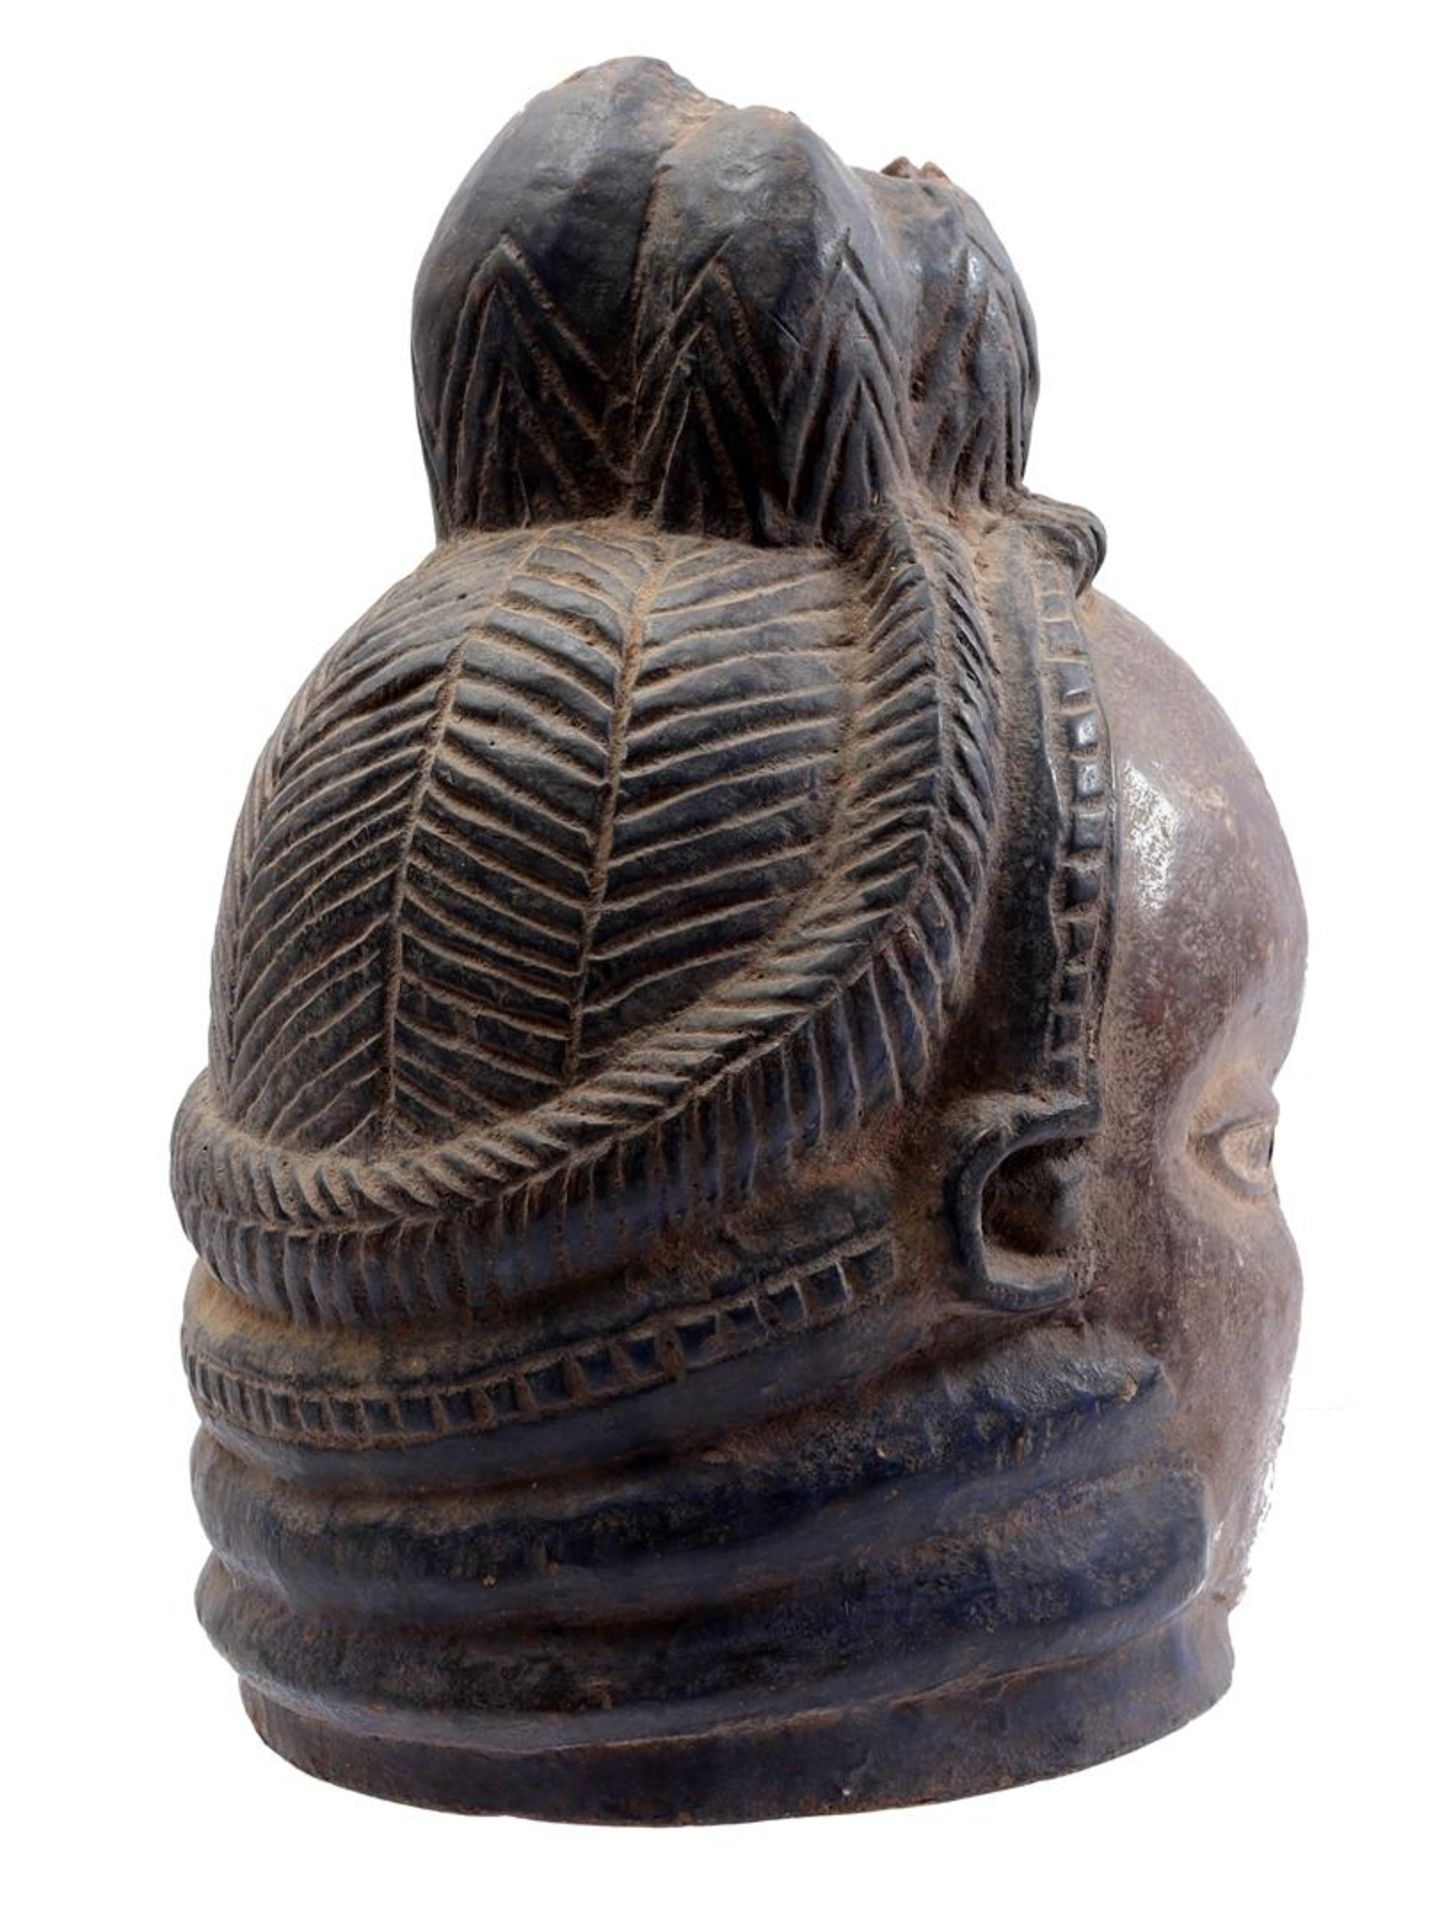 Wooden ceremonial Gelde mask - Image 2 of 5